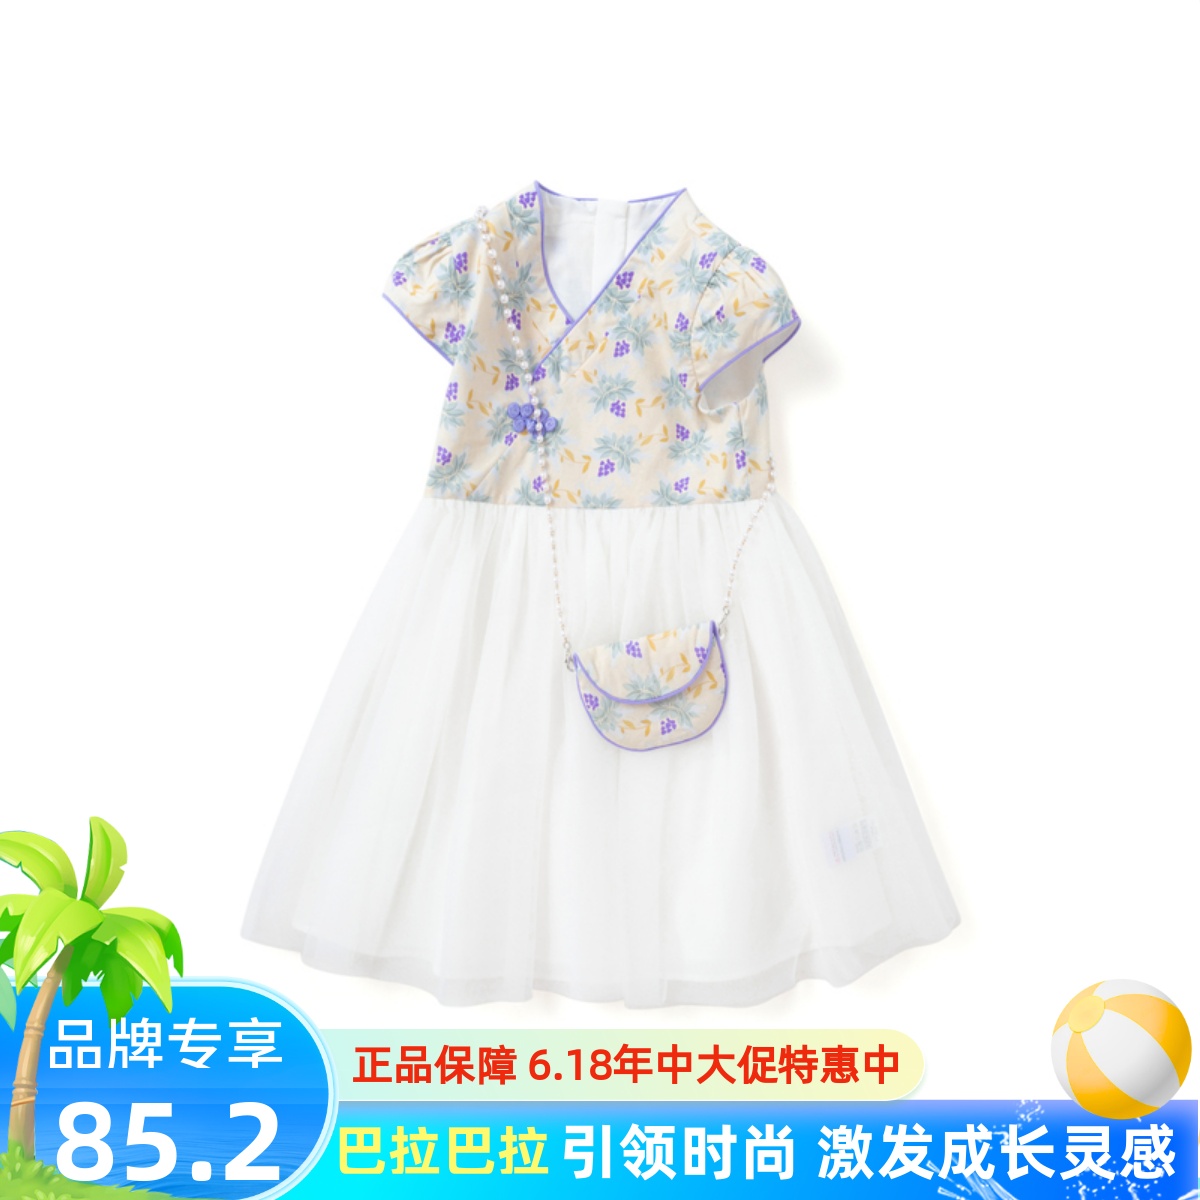 巴拉巴拉女幼童民族风裙子夏季连衣裙201222111025